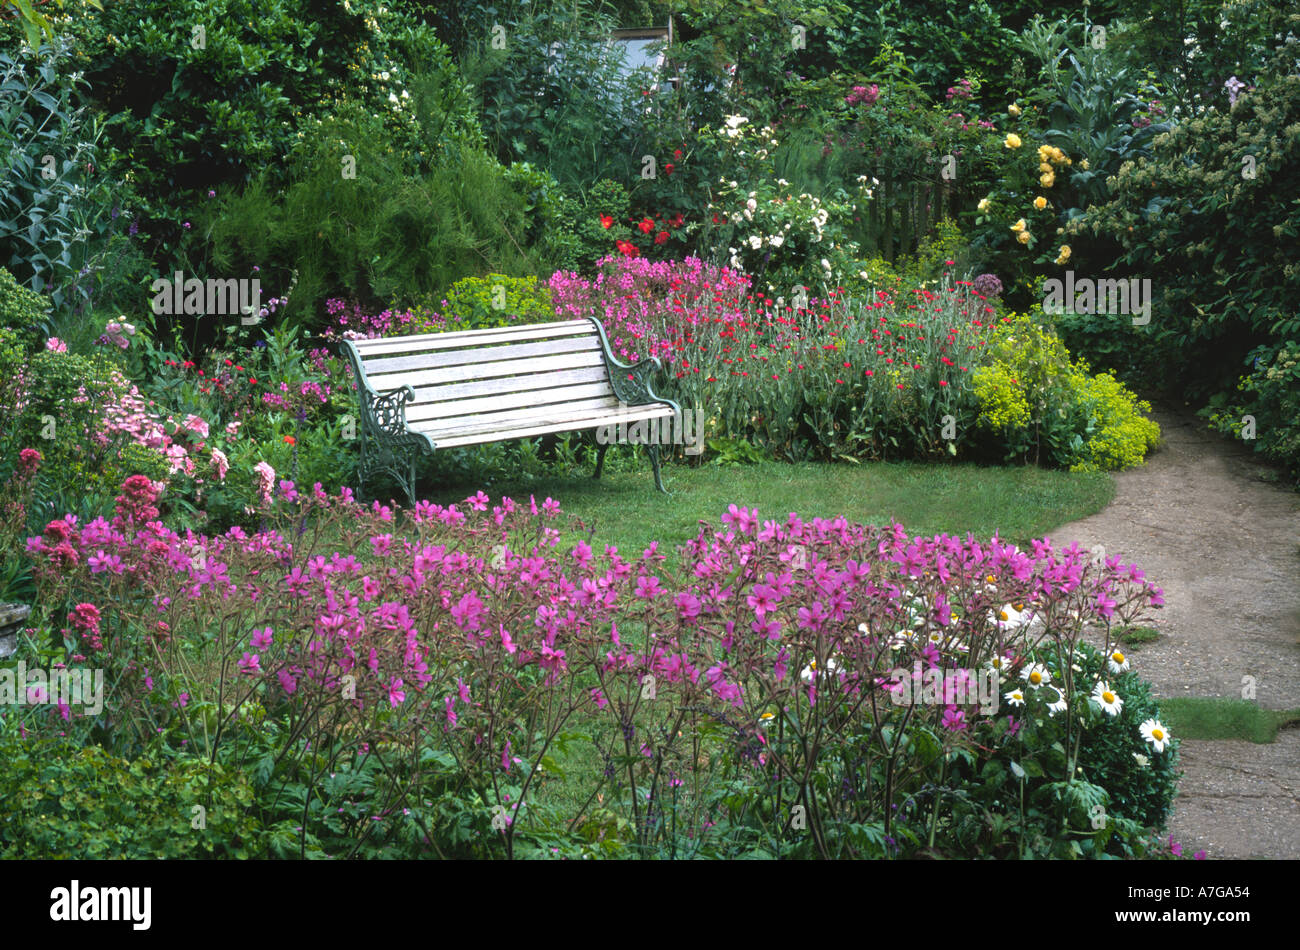 Cottage piccolo giardino Norfolk Inghilterra prato banco geranio rosa fiori viola piccolo giardino progettazione giardini panche posti a sedere Foto Stock